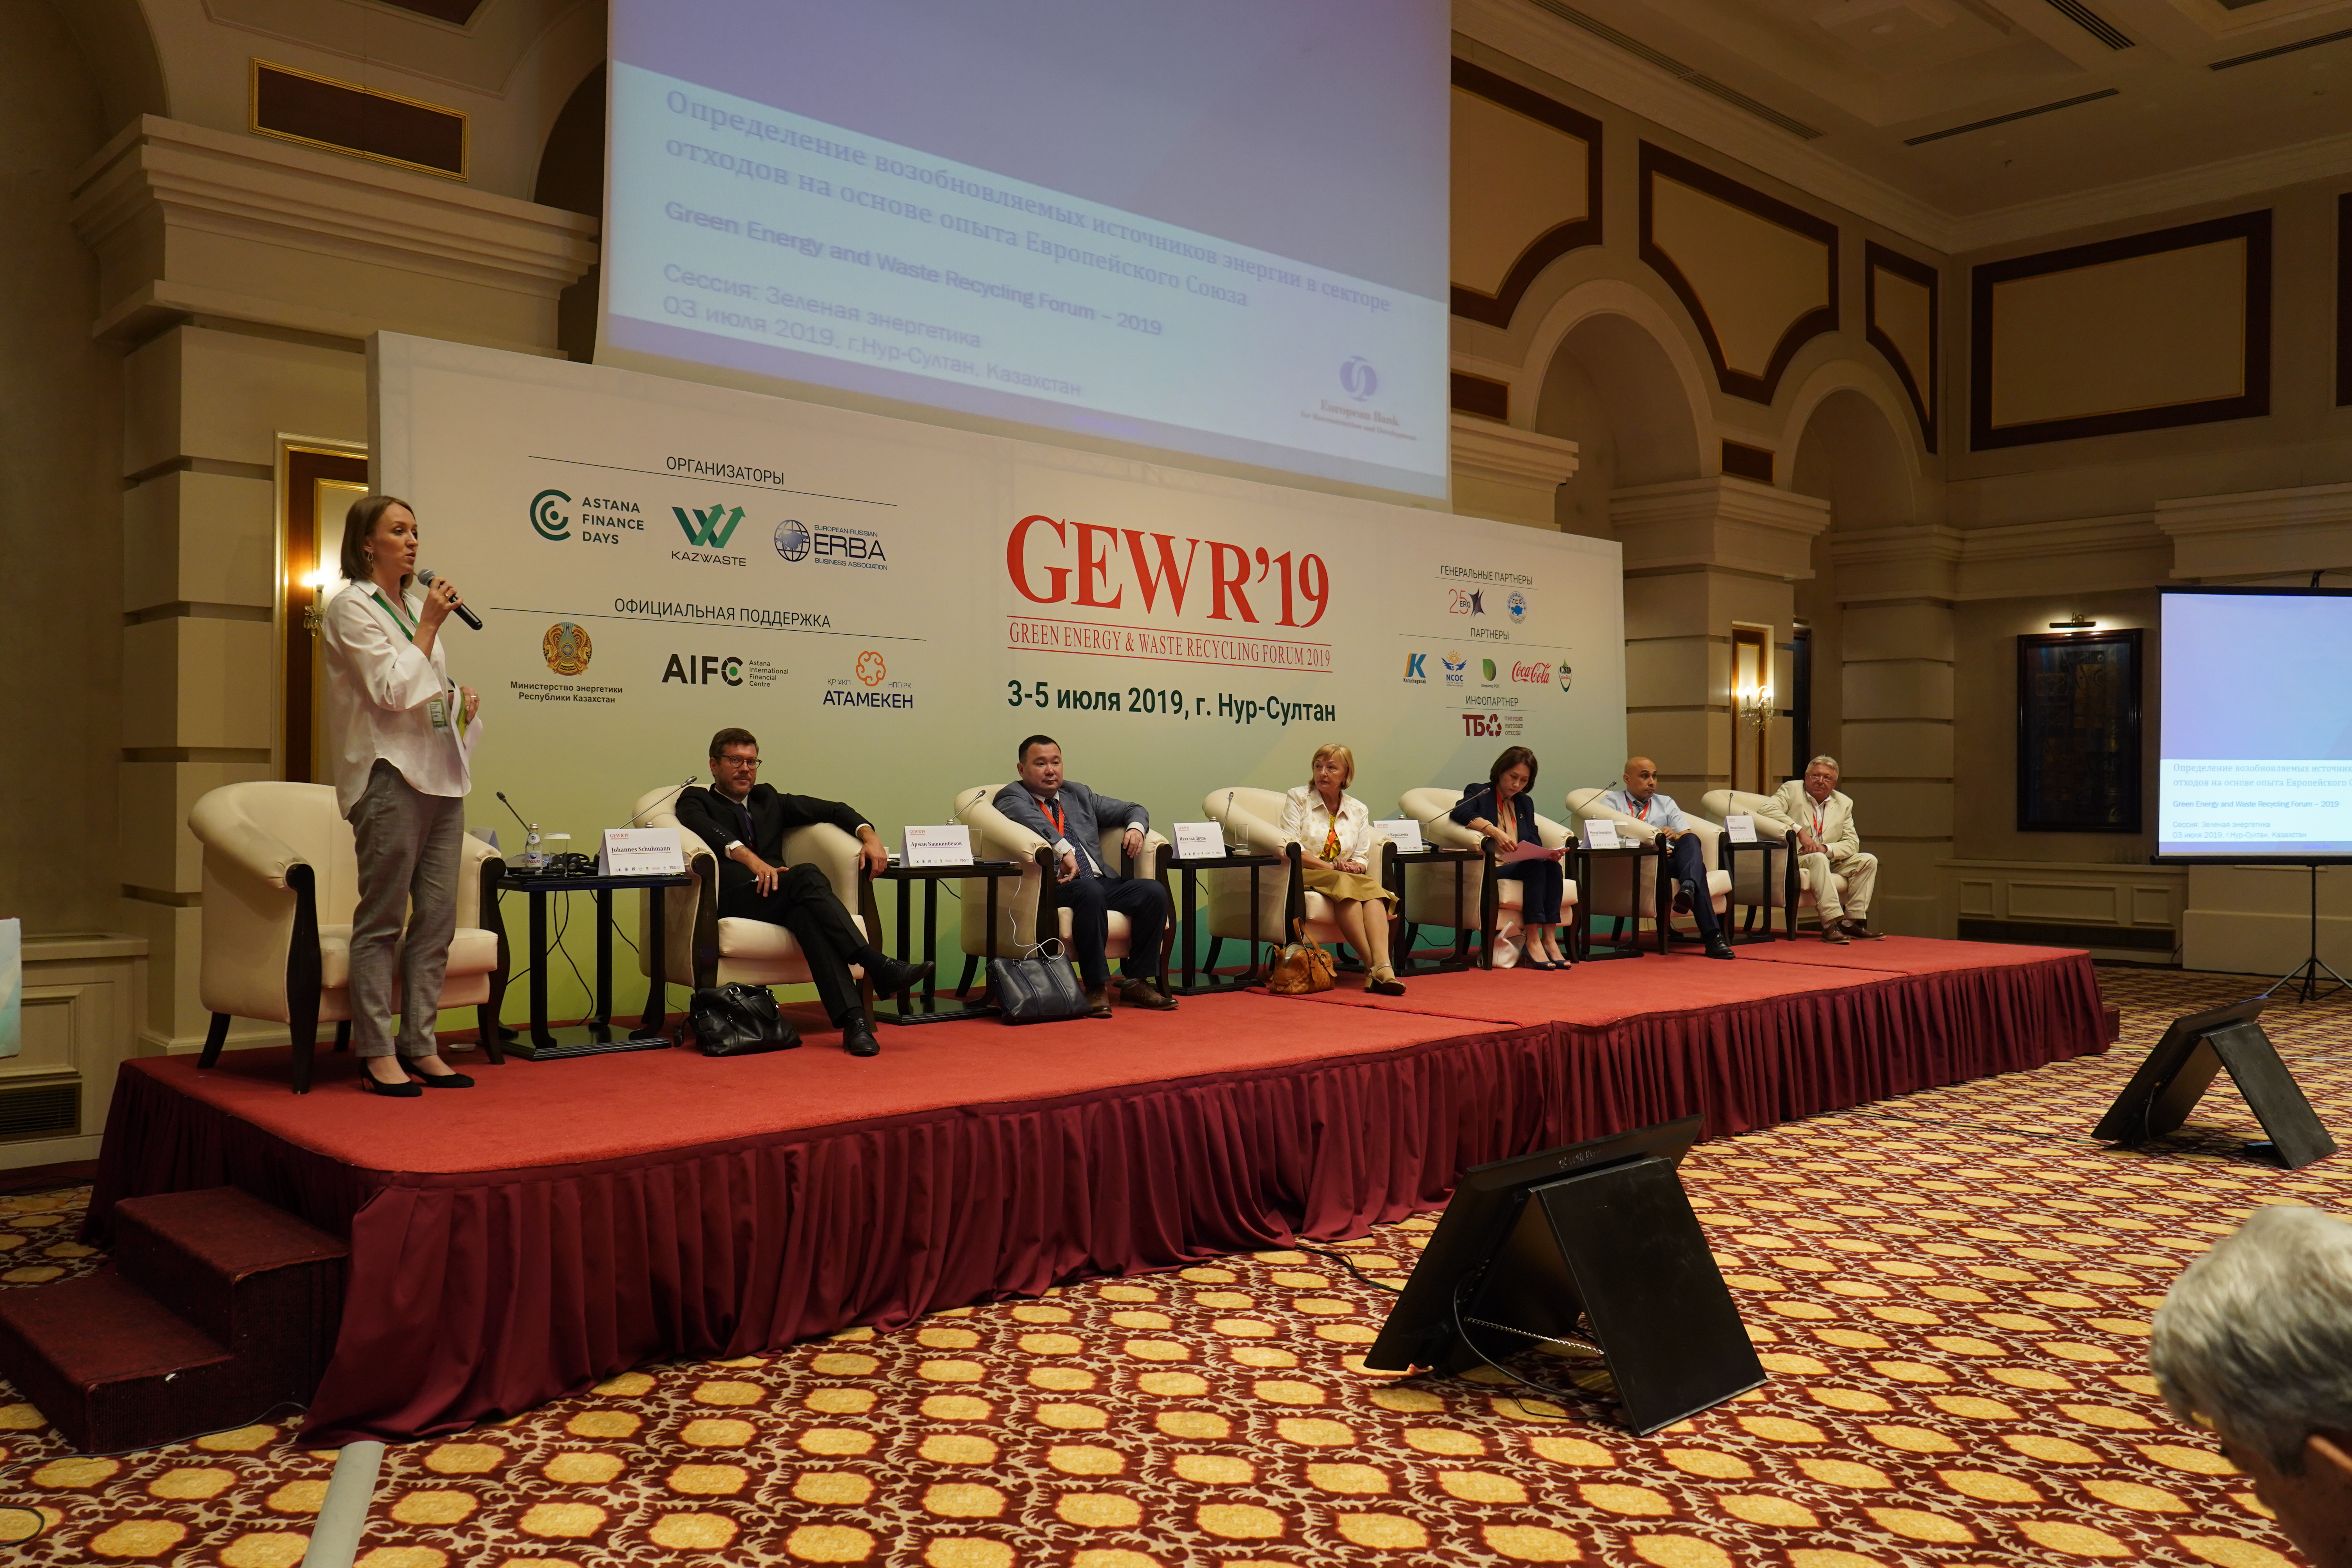 Развитие возобновляемых источников энергии является решающим фактором для достижения климатических целей и целей устойчивого развития - GEWR 2019